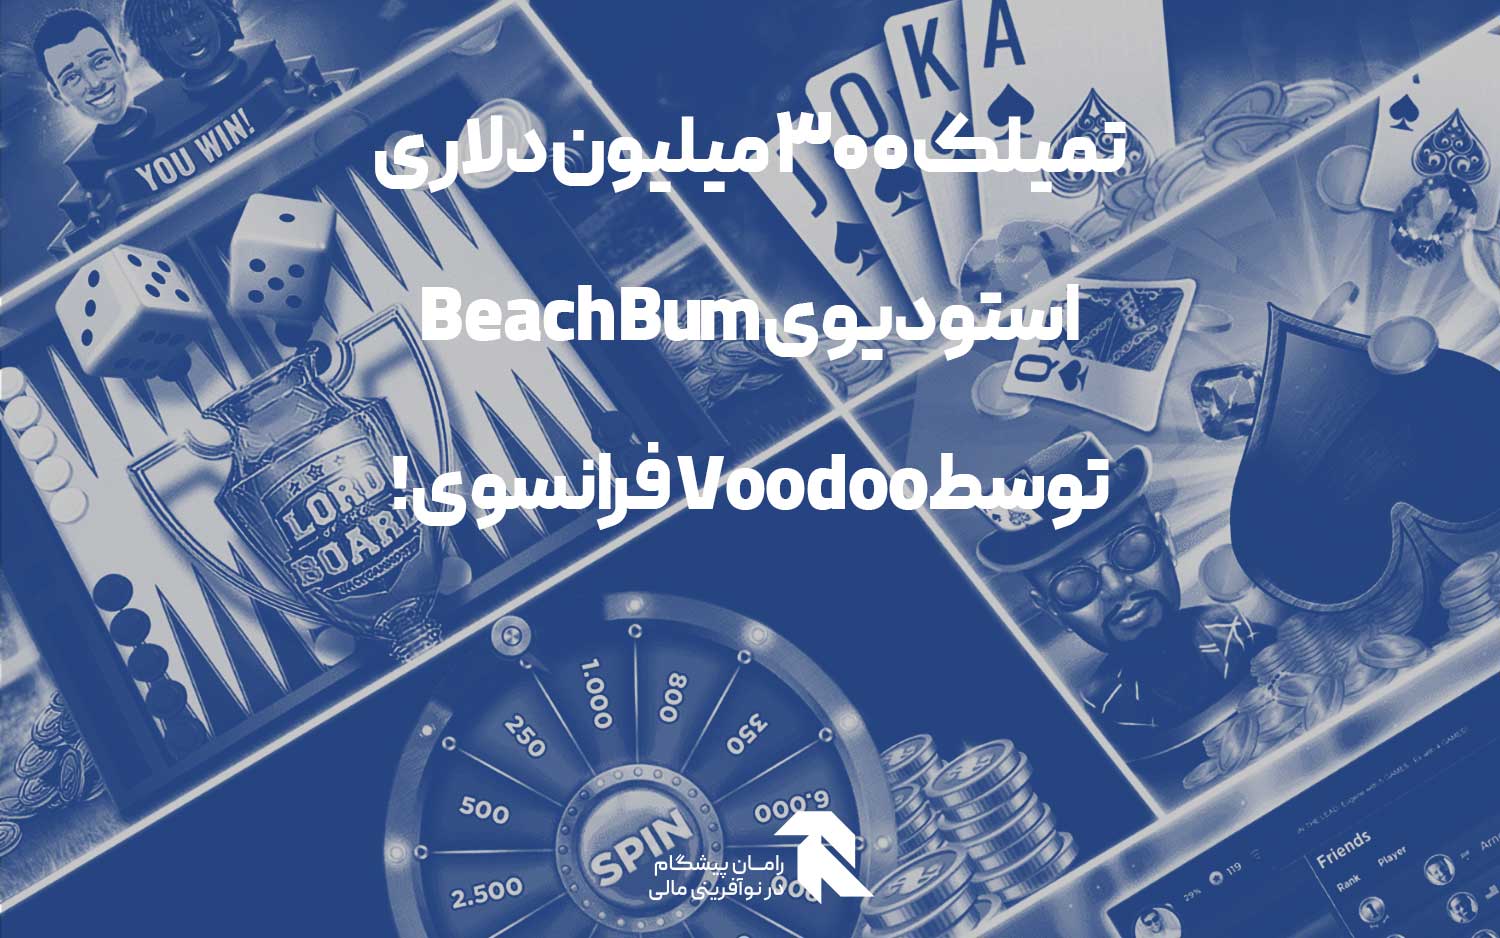 تمیلک 300 میلیون دلاری استودیوی Beach Bum توسطVoodoo  فرانسوی!